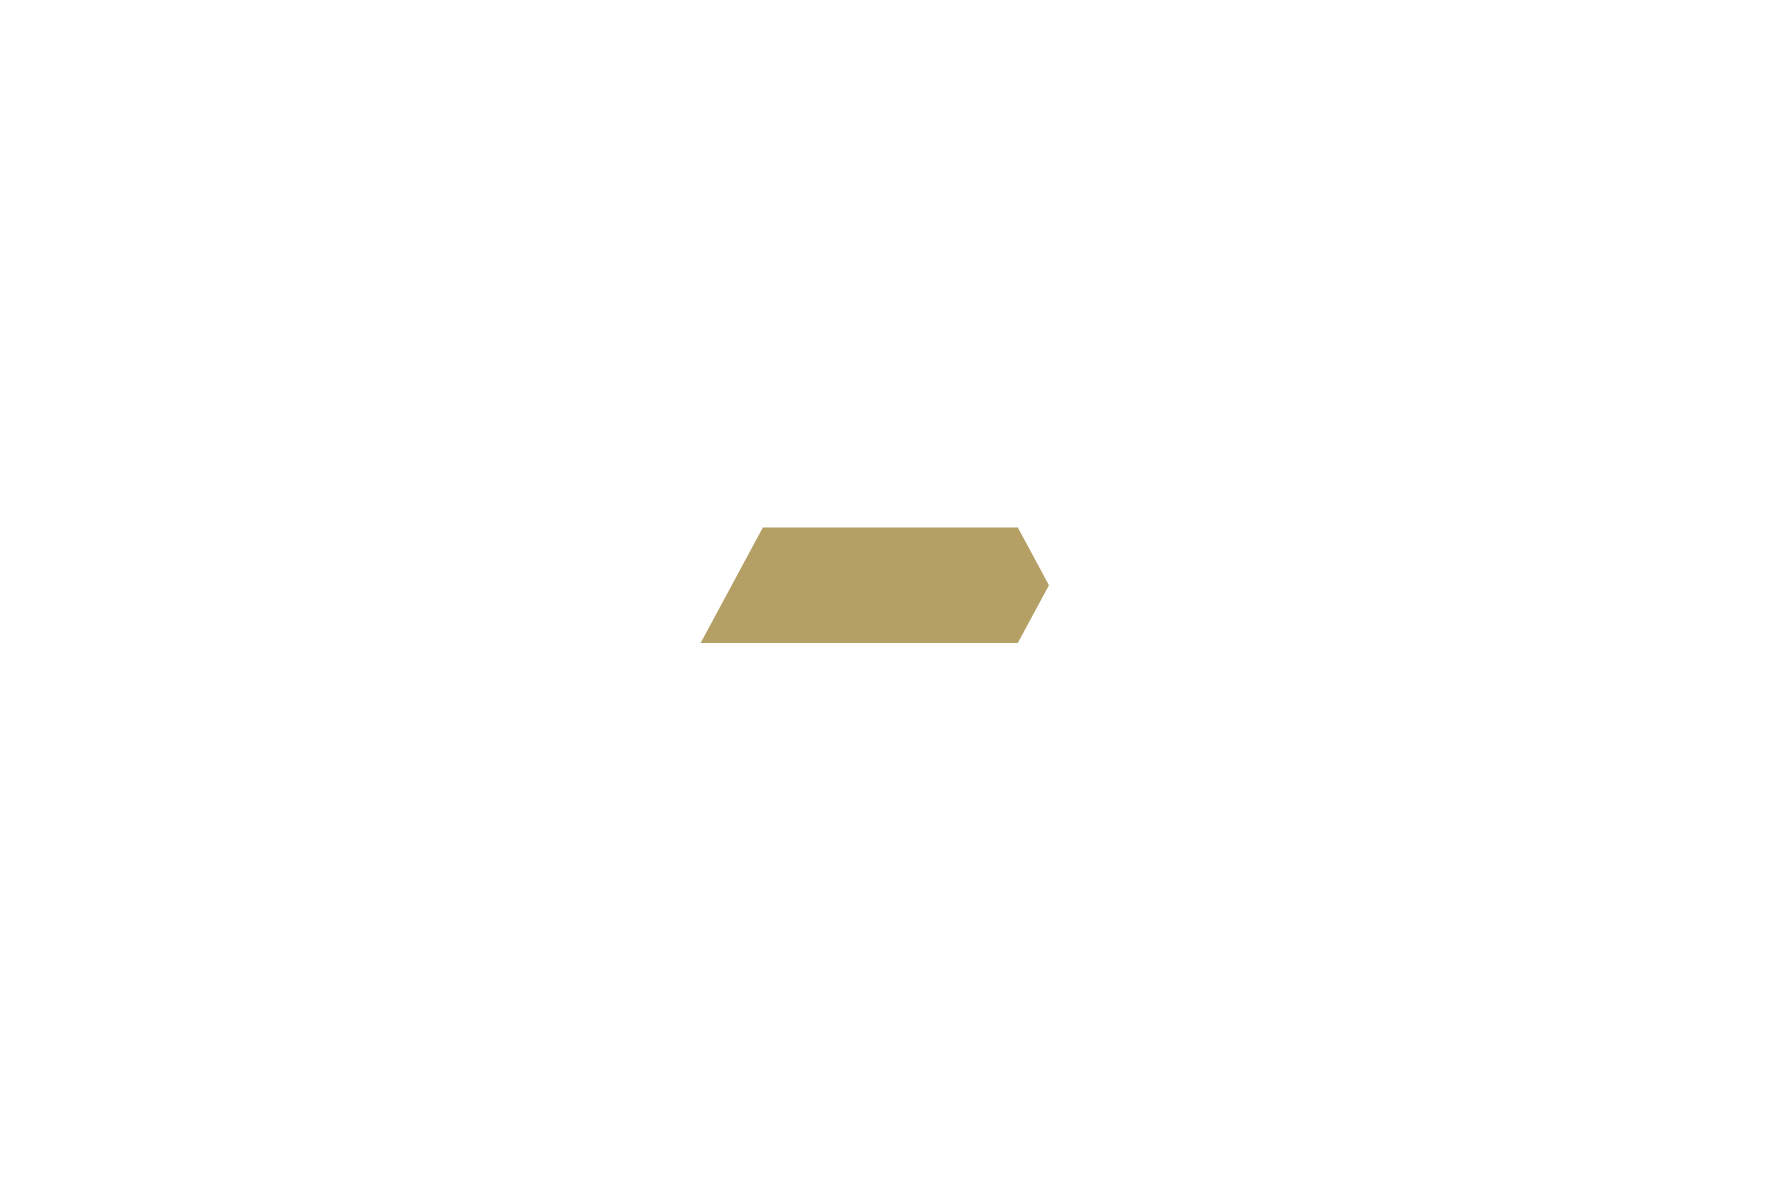 V-Ex